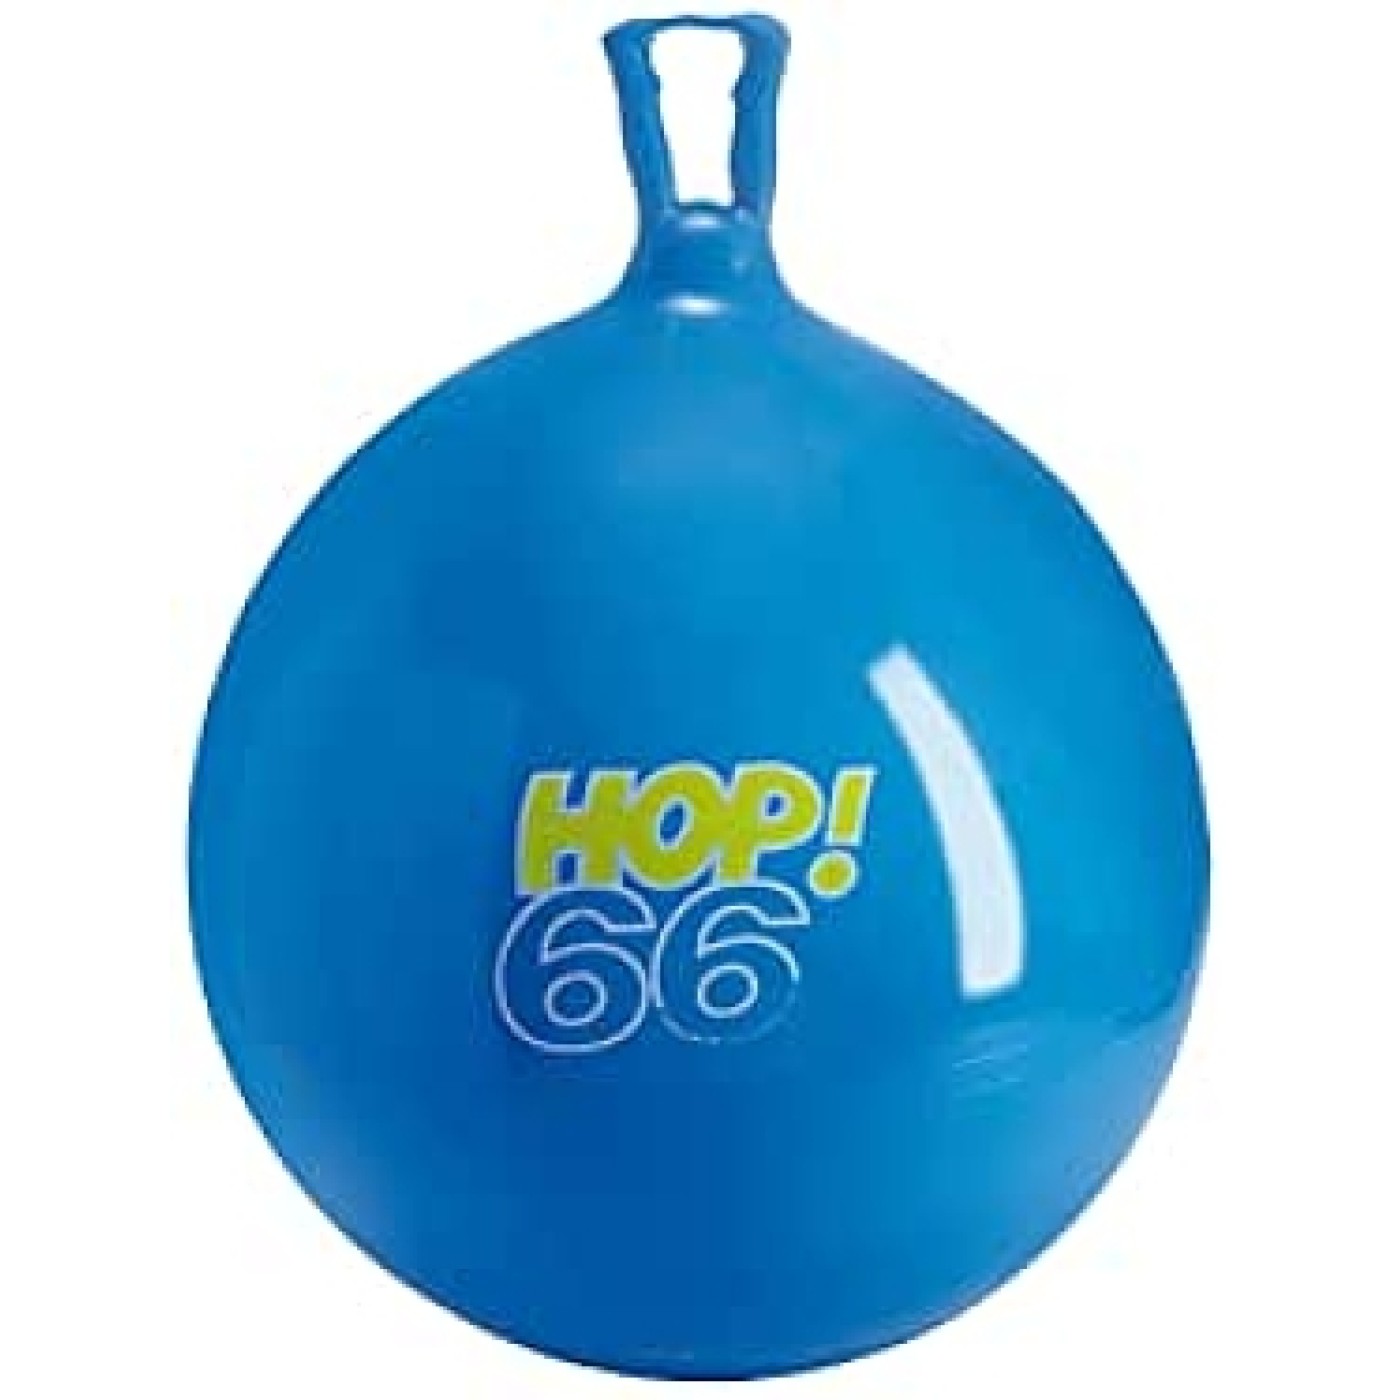 Hop 66 - Blue